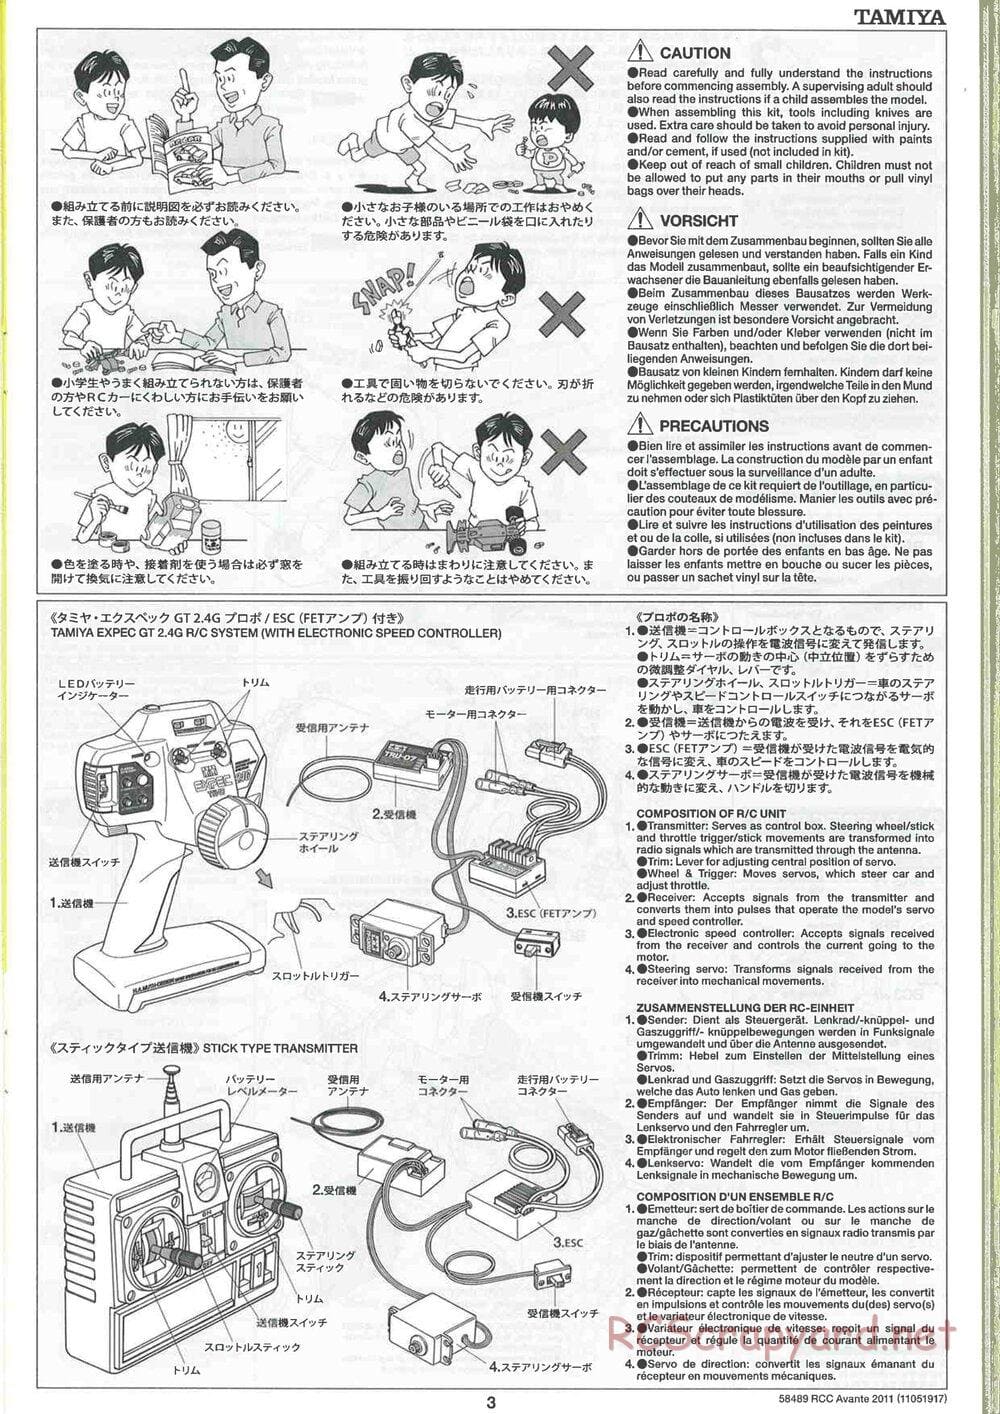 Tamiya - Avante 2011 - AV Chassis - Manual - Page 3